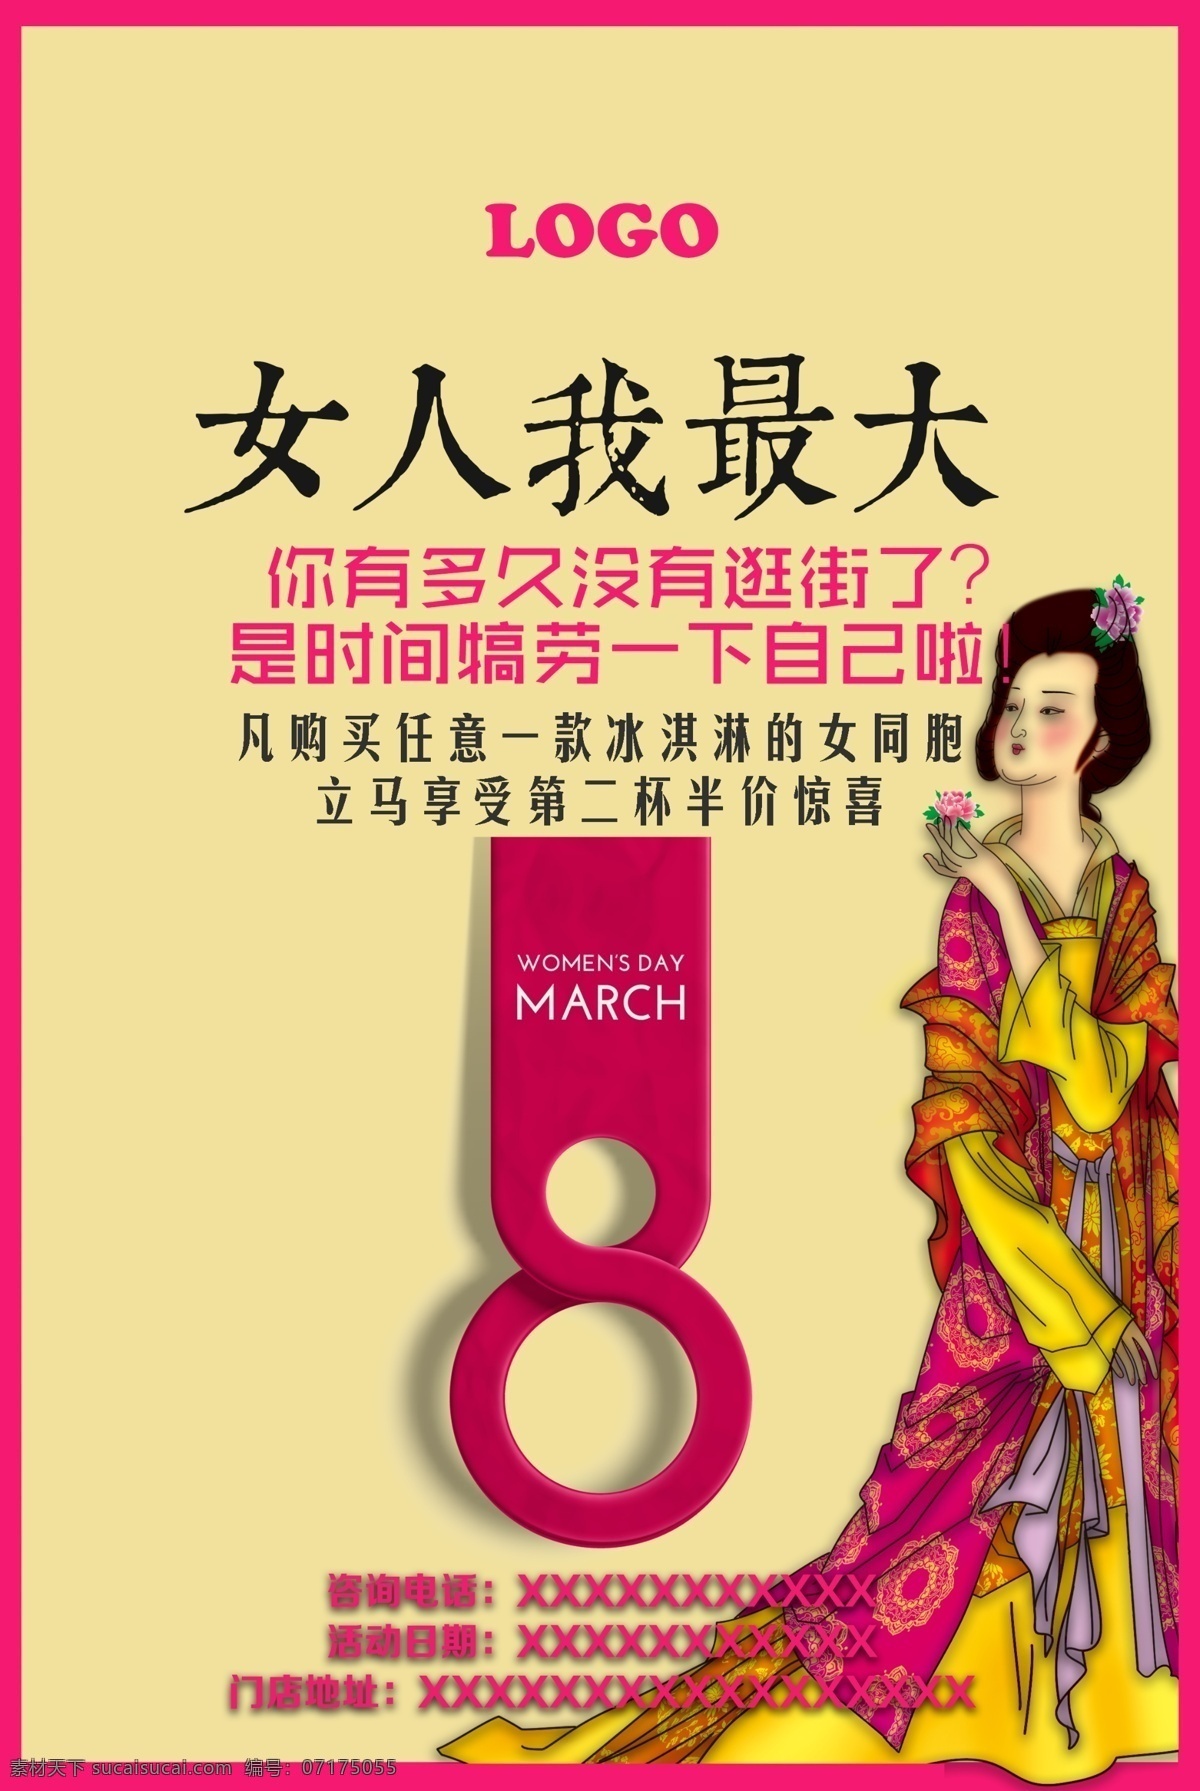 月 日 妇女节 活动海报 女人 海报 活动策划 仕女 中国风 销售 冰淇淋 传统 文化 艺术 促销海报 女人节 3月8日